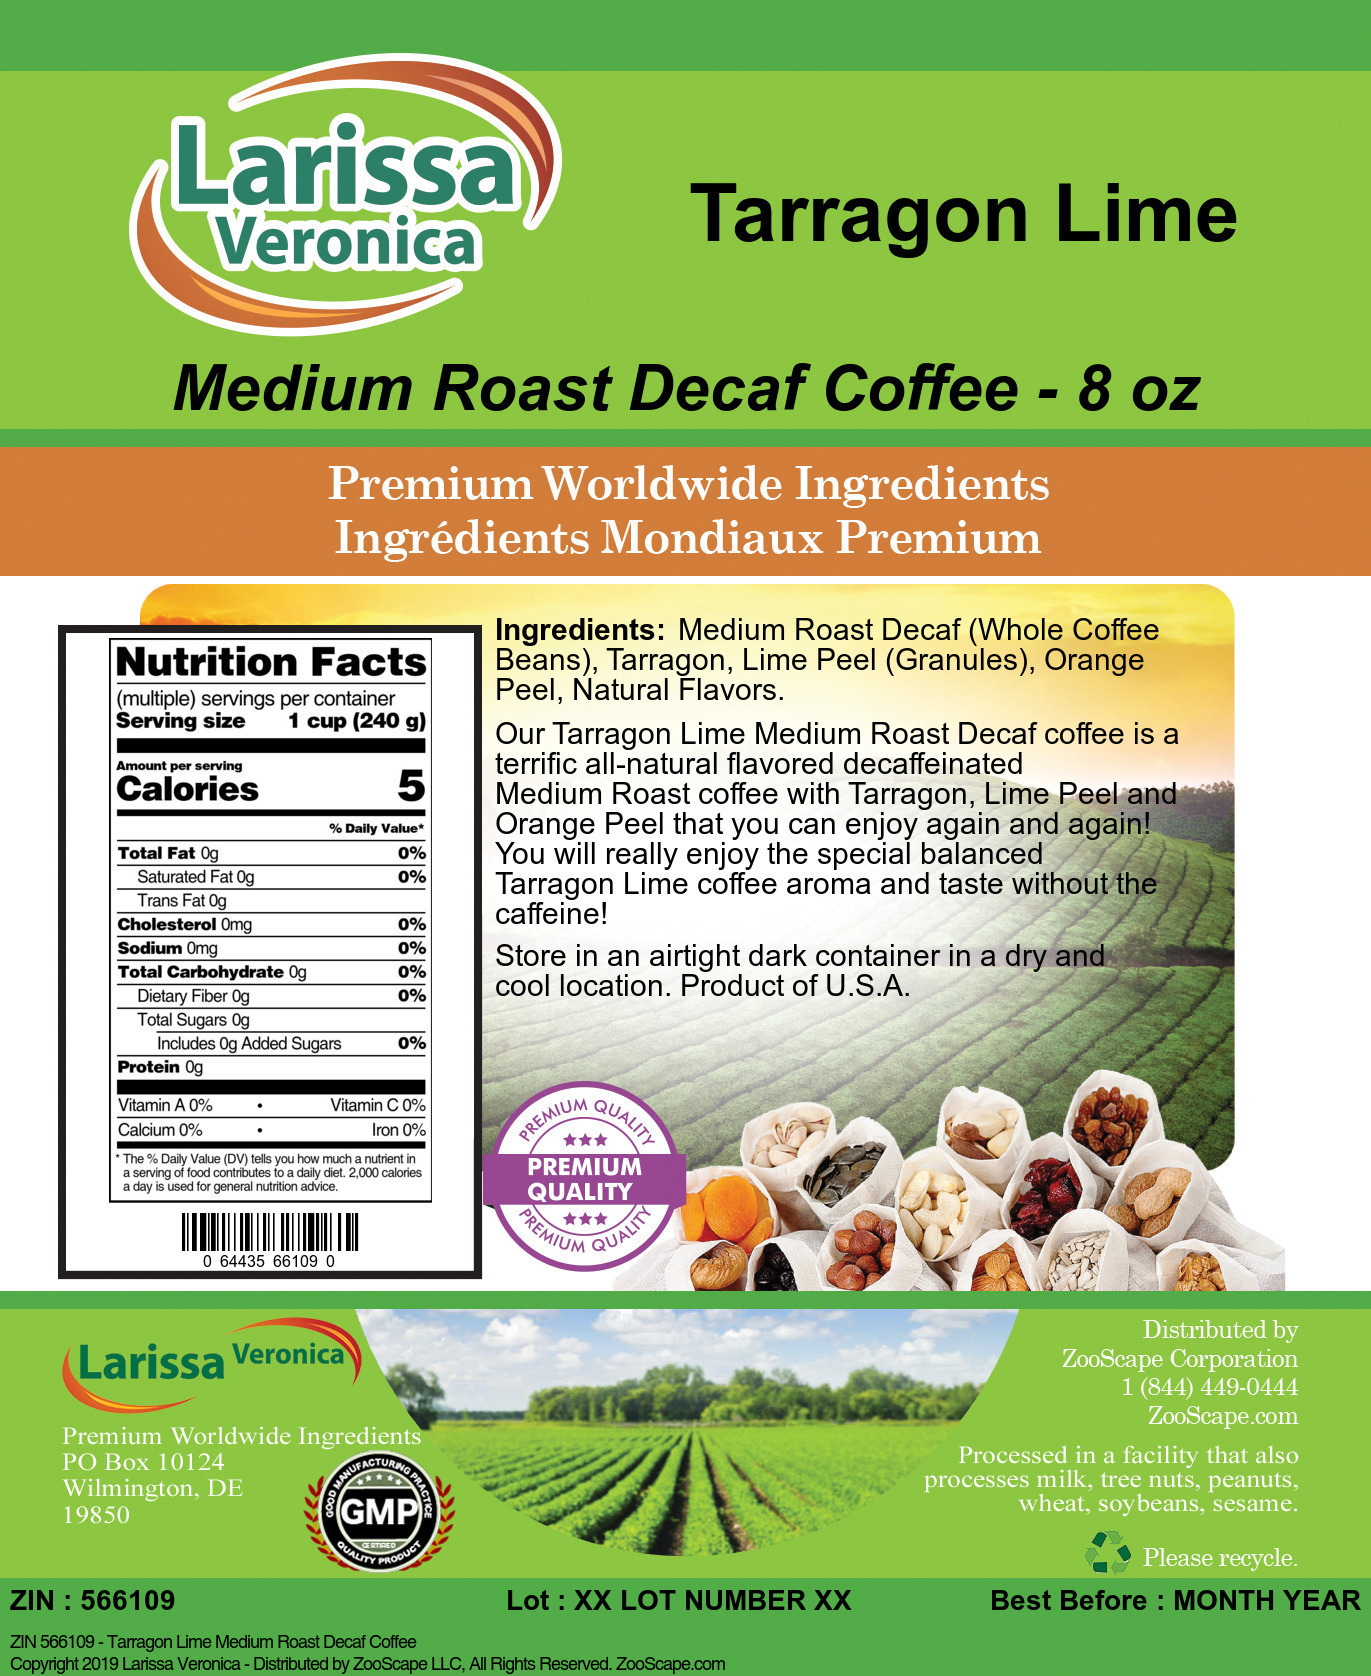 Tarragon Lime Medium Roast Decaf Coffee - Label